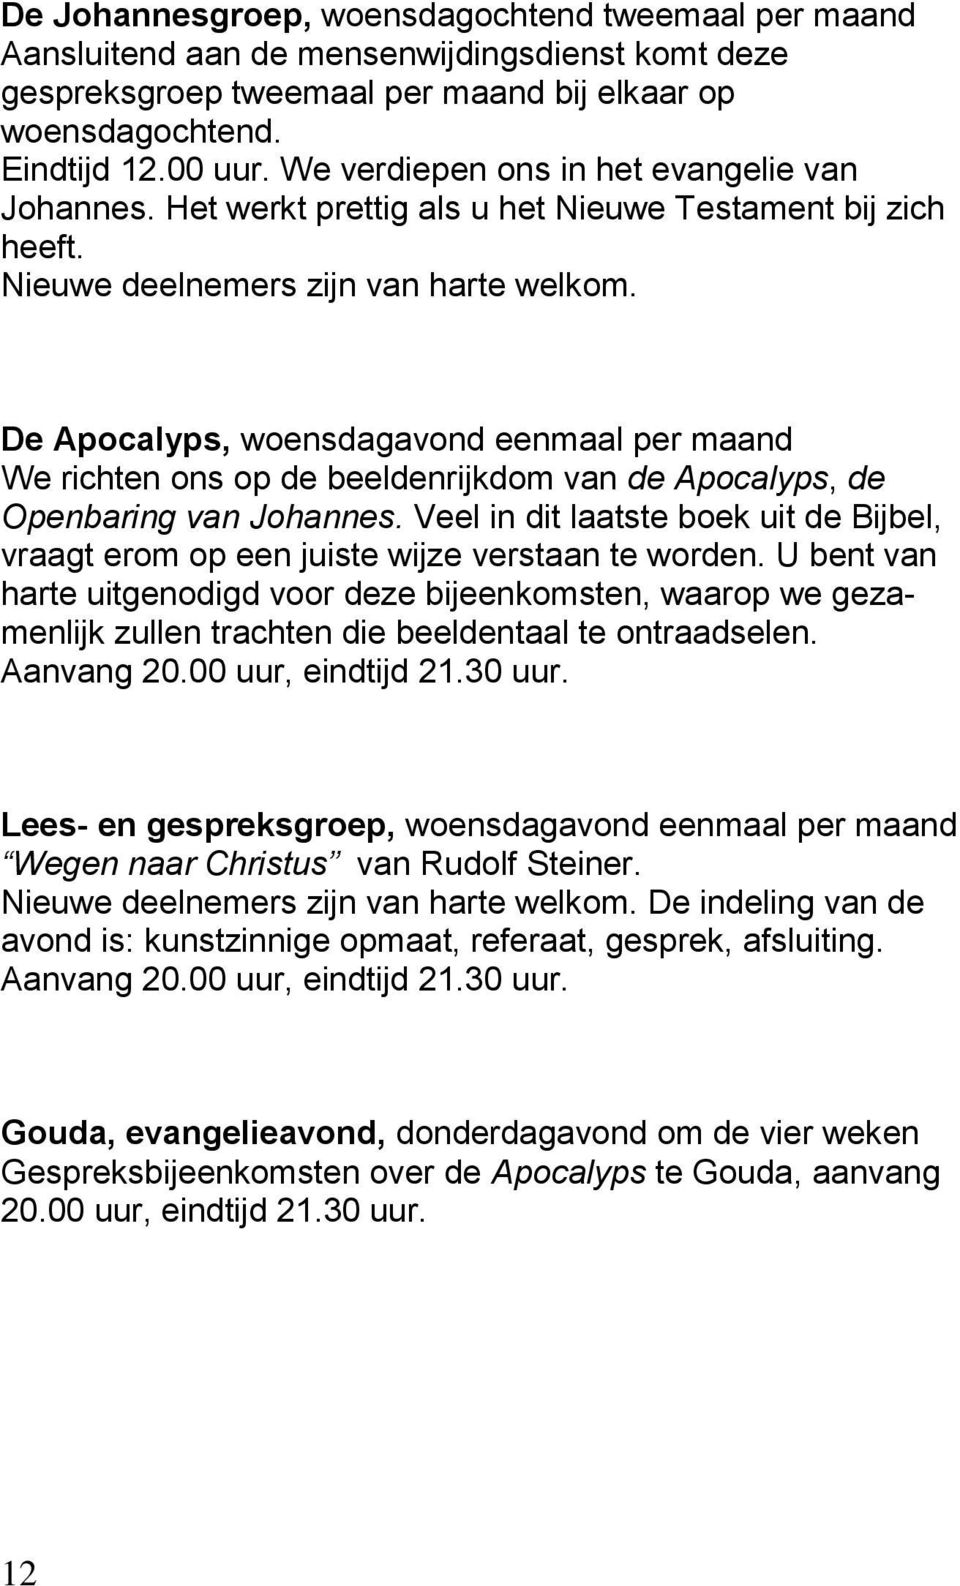 De Apocalyps, woensdagavond eenmaal per maand We richten ons op de beeldenrijkdom van de Apocalyps, de Openbaring van Johannes.